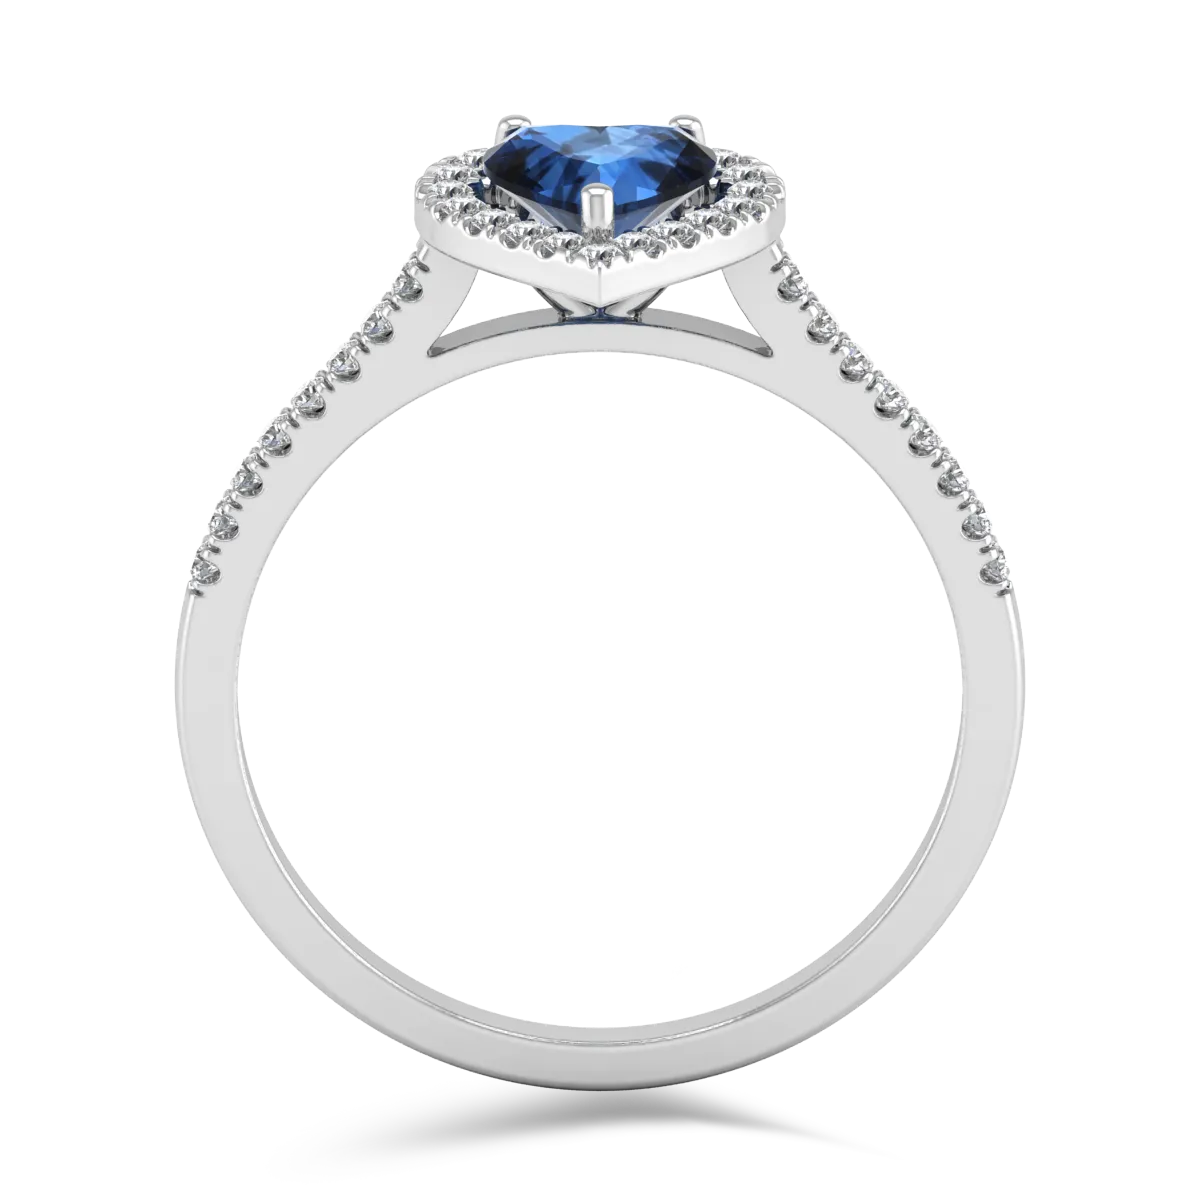 Eljegyzési gyűrű 18K-os fehér aranyból 0,76ct gyémánttal és 0,26ct gyémántokkal. Gramm: 3,3